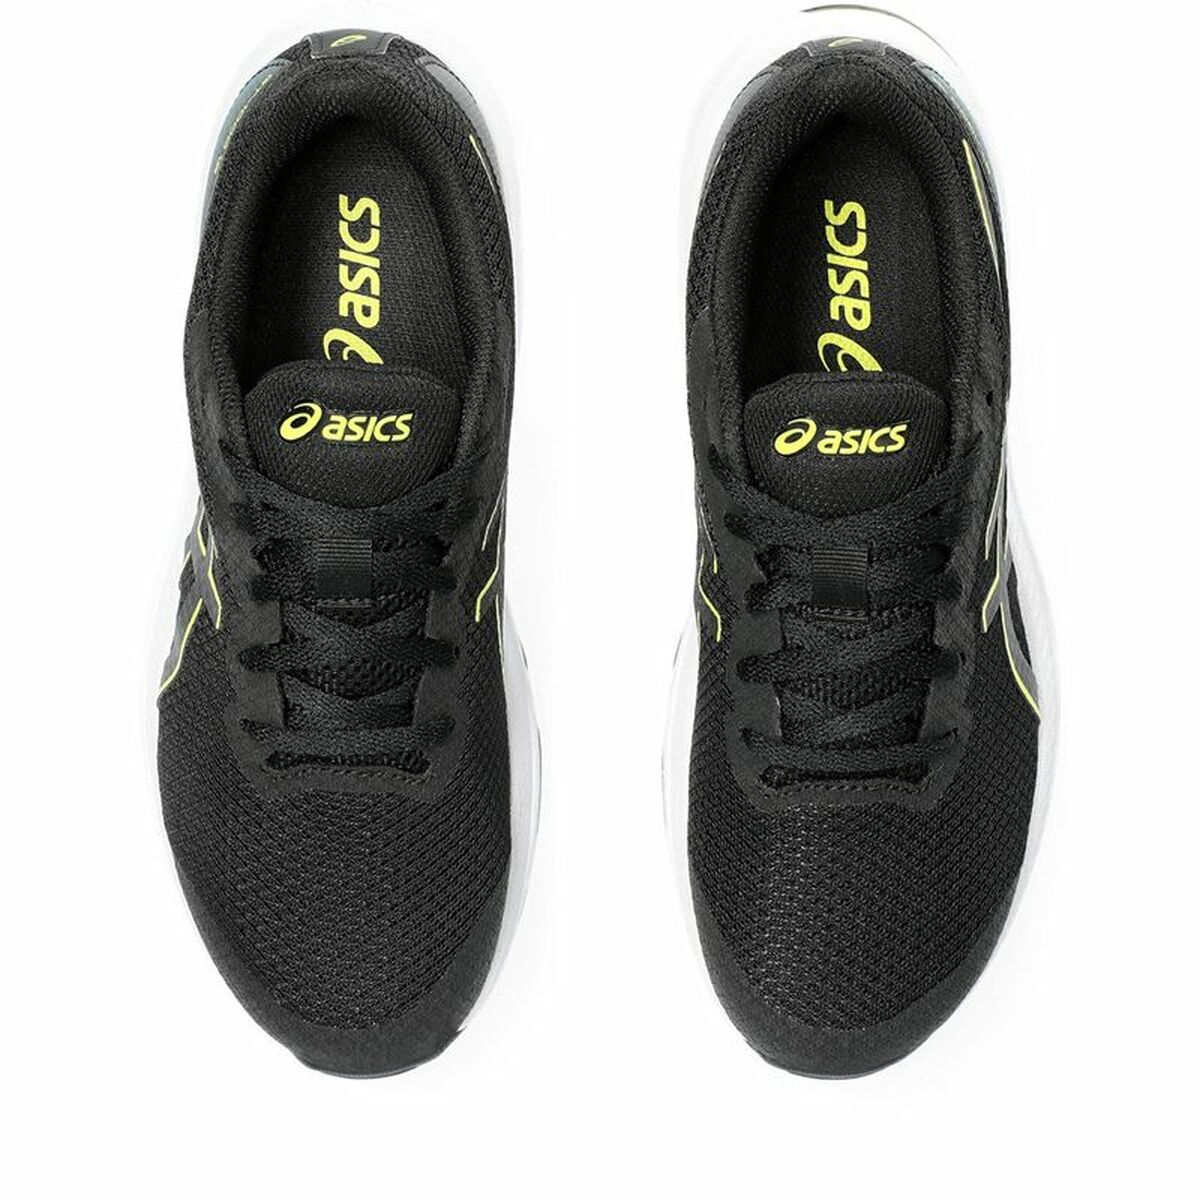 Running Shoes for Kids Asics GT-1000 Black